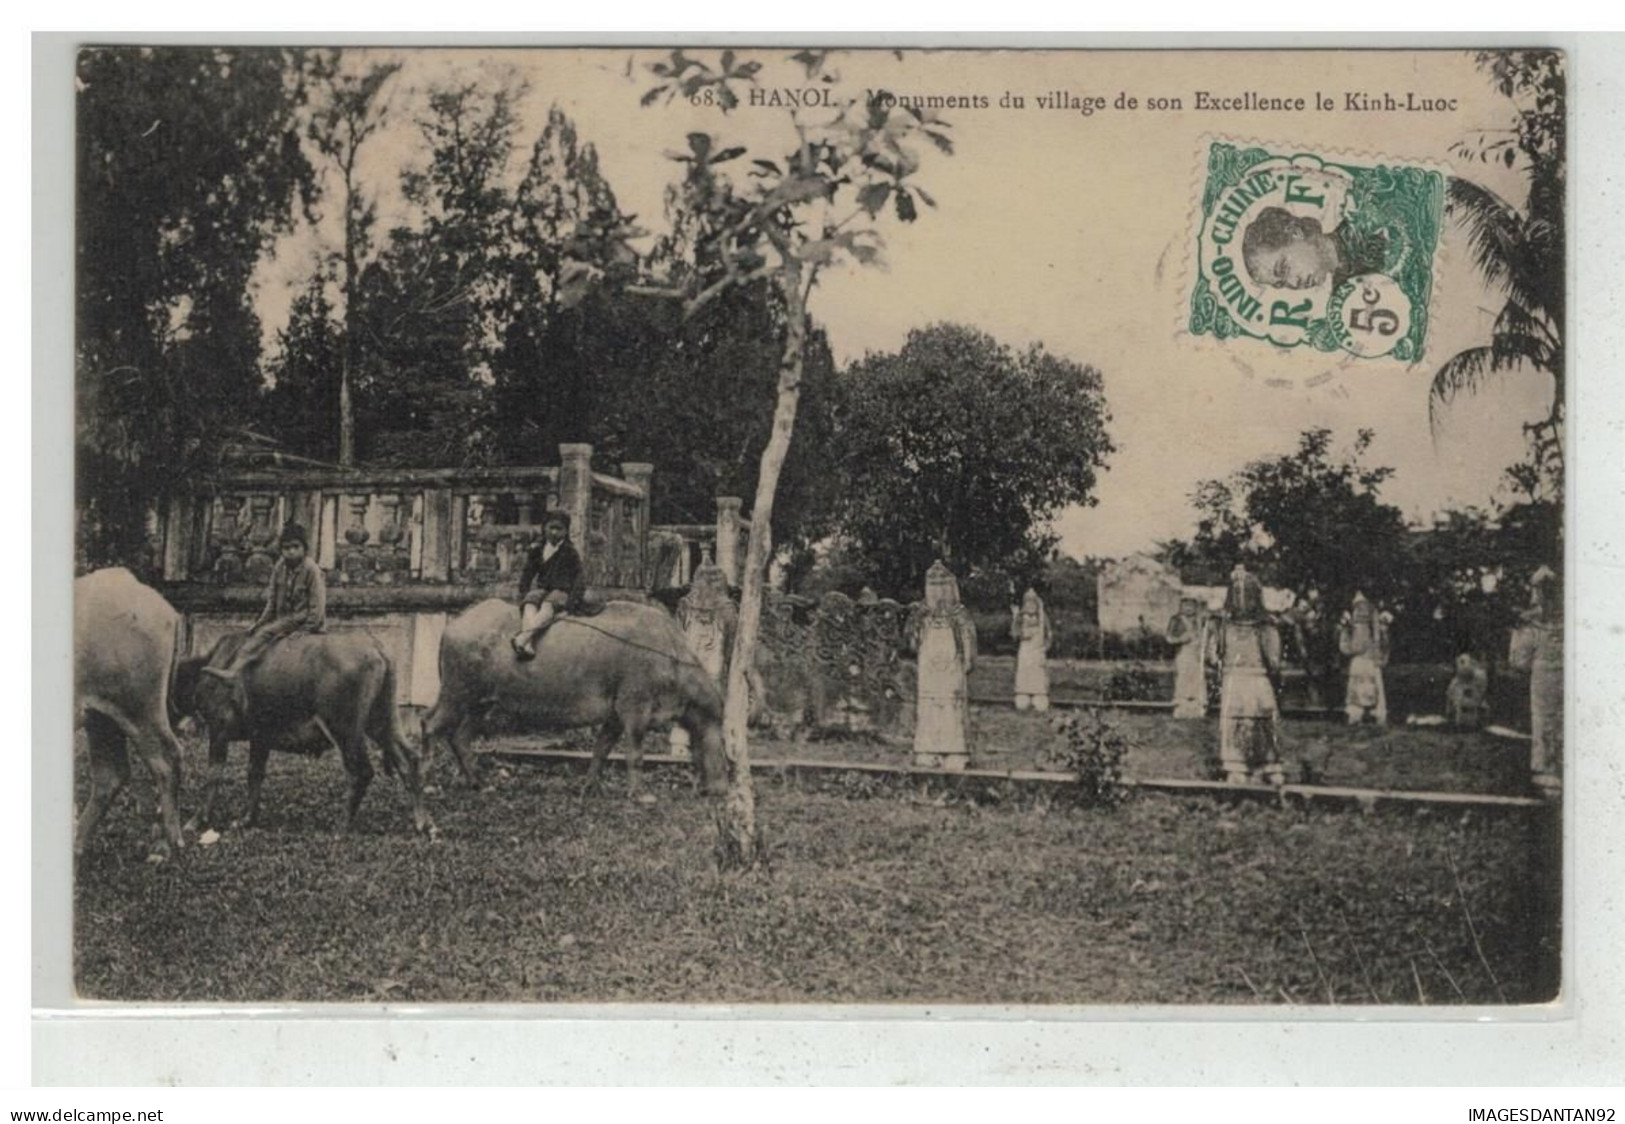 TONKIN INDOCHINE VIETNAM SAIGON #18648 HANOI MONUMENTS DU VILLAGE DE EXCELLENCE LE KINH LUOC BUFFLES - Viêt-Nam